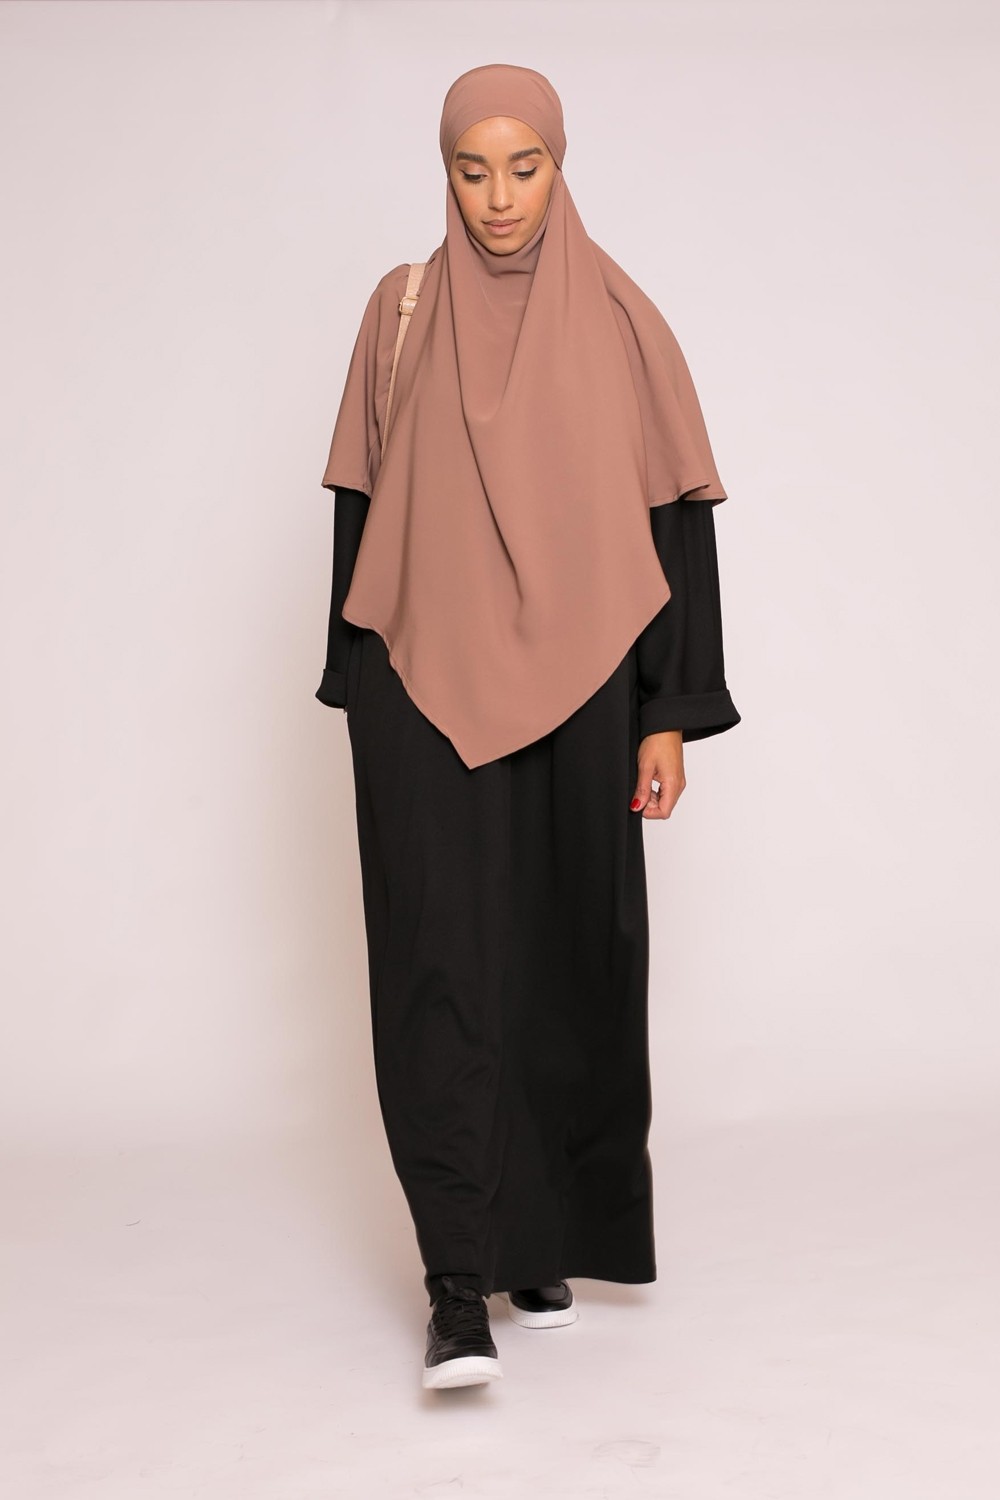 Abaya longue et large oversize noir vêtement mastour pour femme musulmane hijab shop